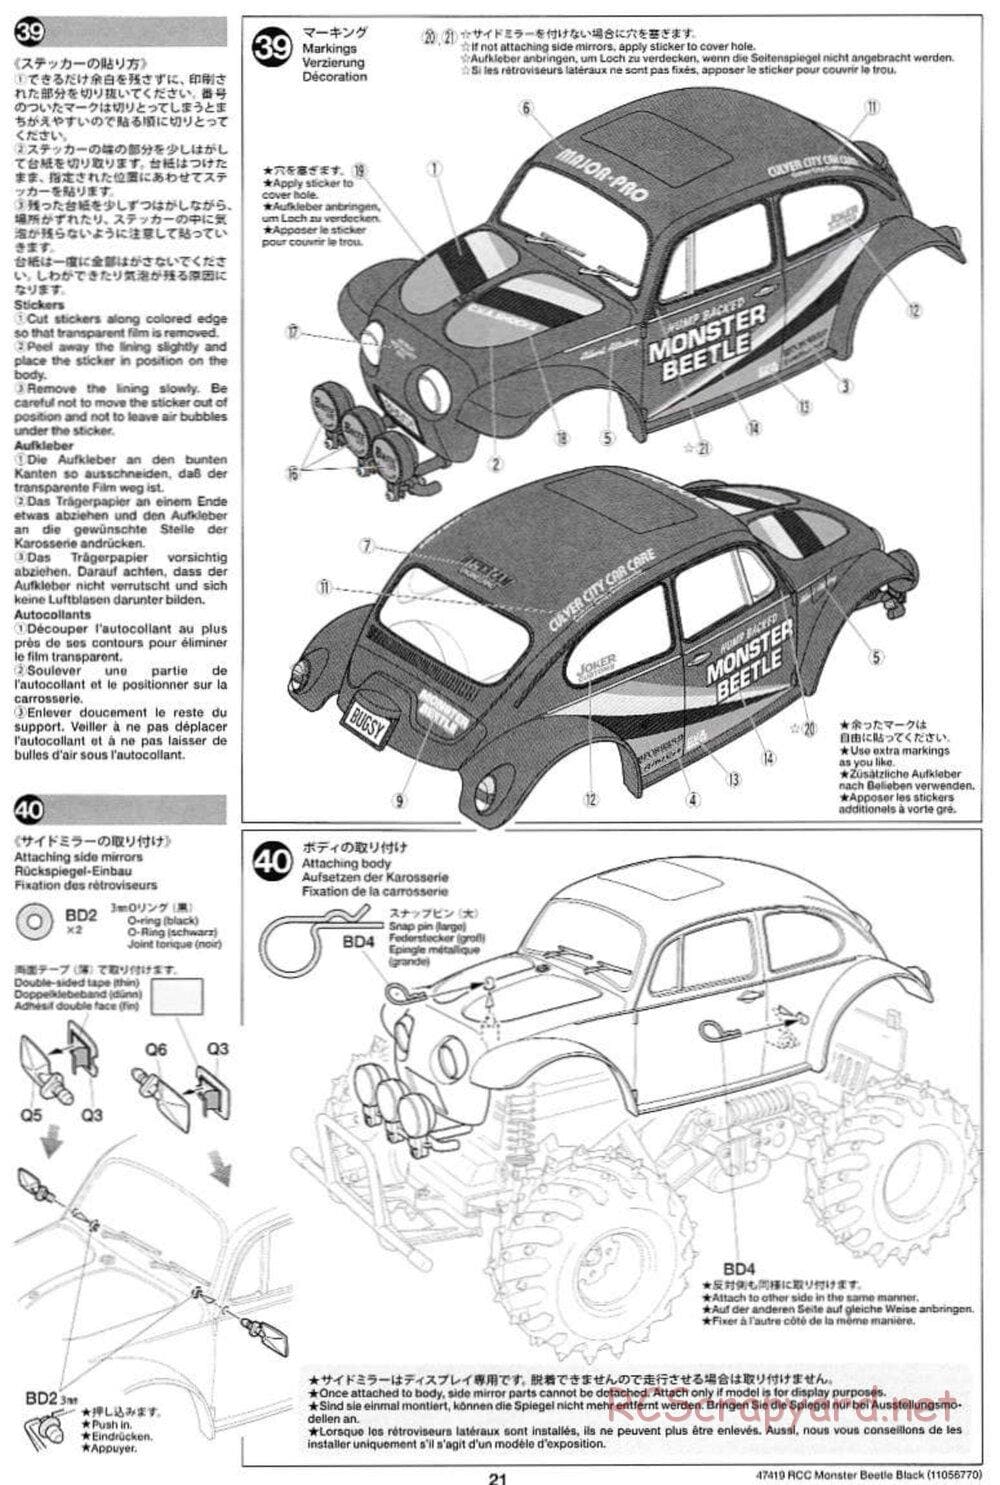 Tamiya - Monster Beetle Black Edition - ORV Chassis - Manual - Page 21